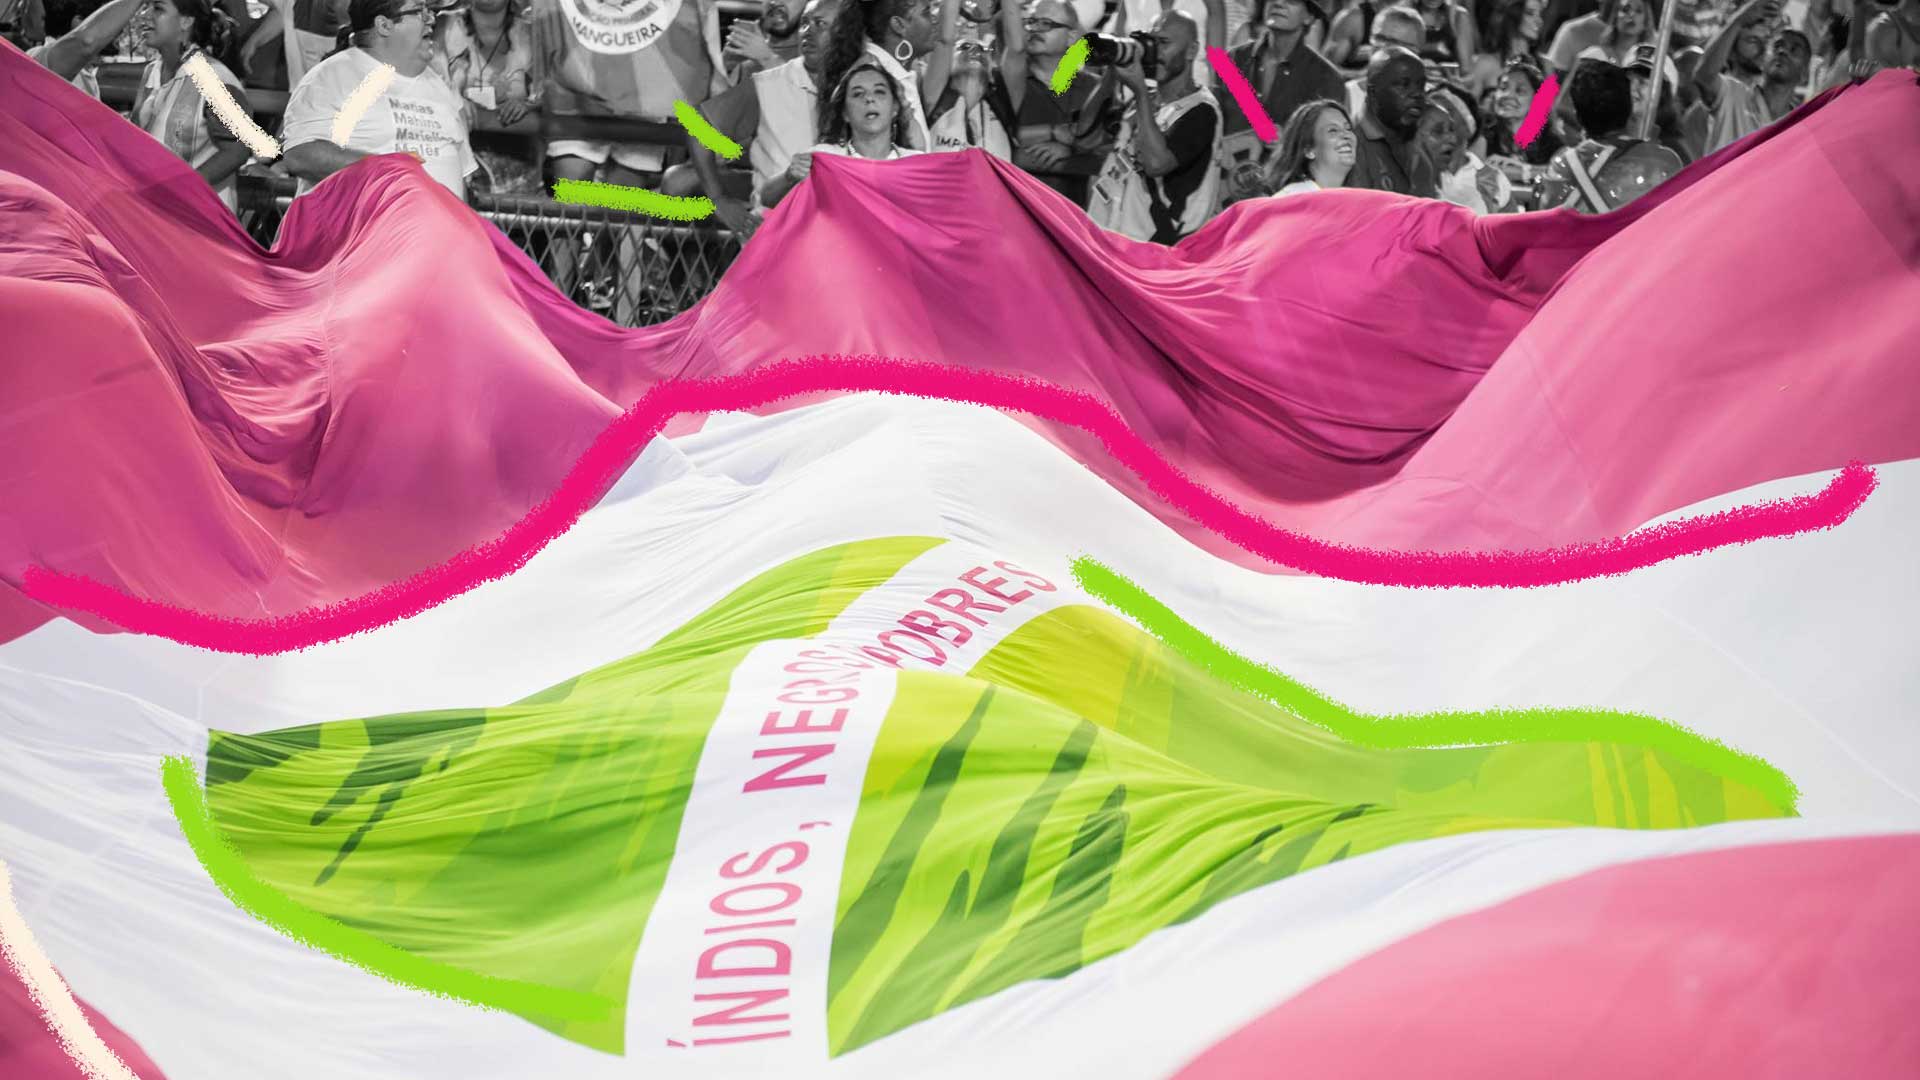 Imagem da bandeira da mangueira - verde, branca e rosa no primeiro plano. Atrás da bandeira tem uma imagem em preto e branco de várias pessoas no sambódromo